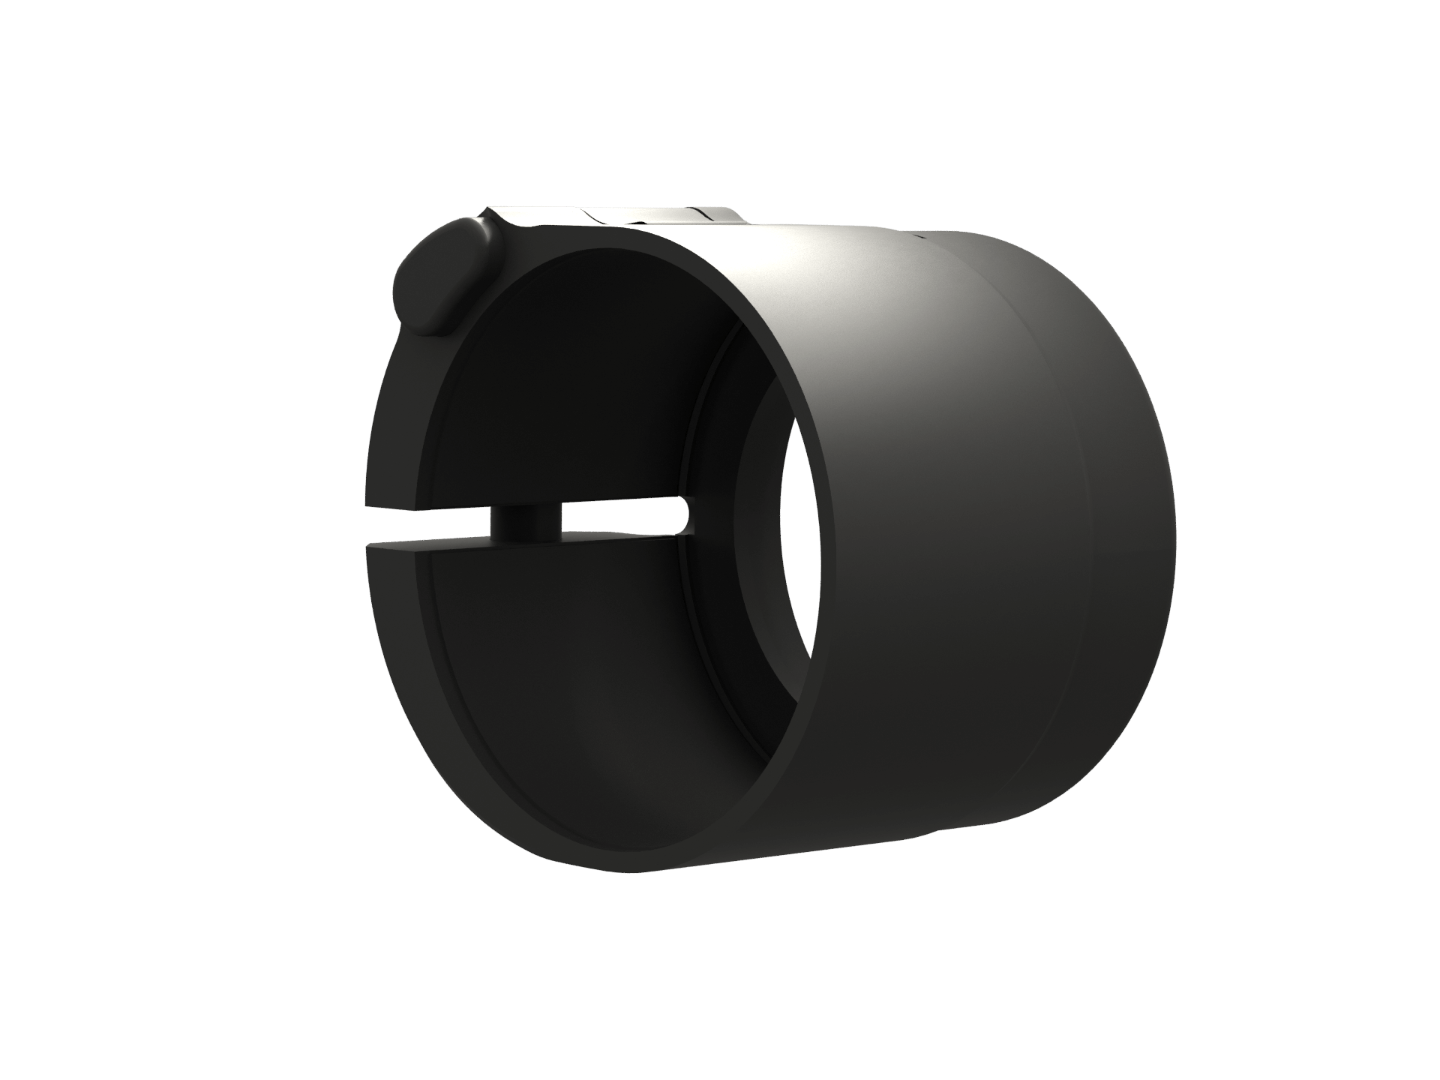 Фото-573 Kольцо-адаптер для предобъективных насадок с резьбой М46х0.75 (STRIX/NIVEX)